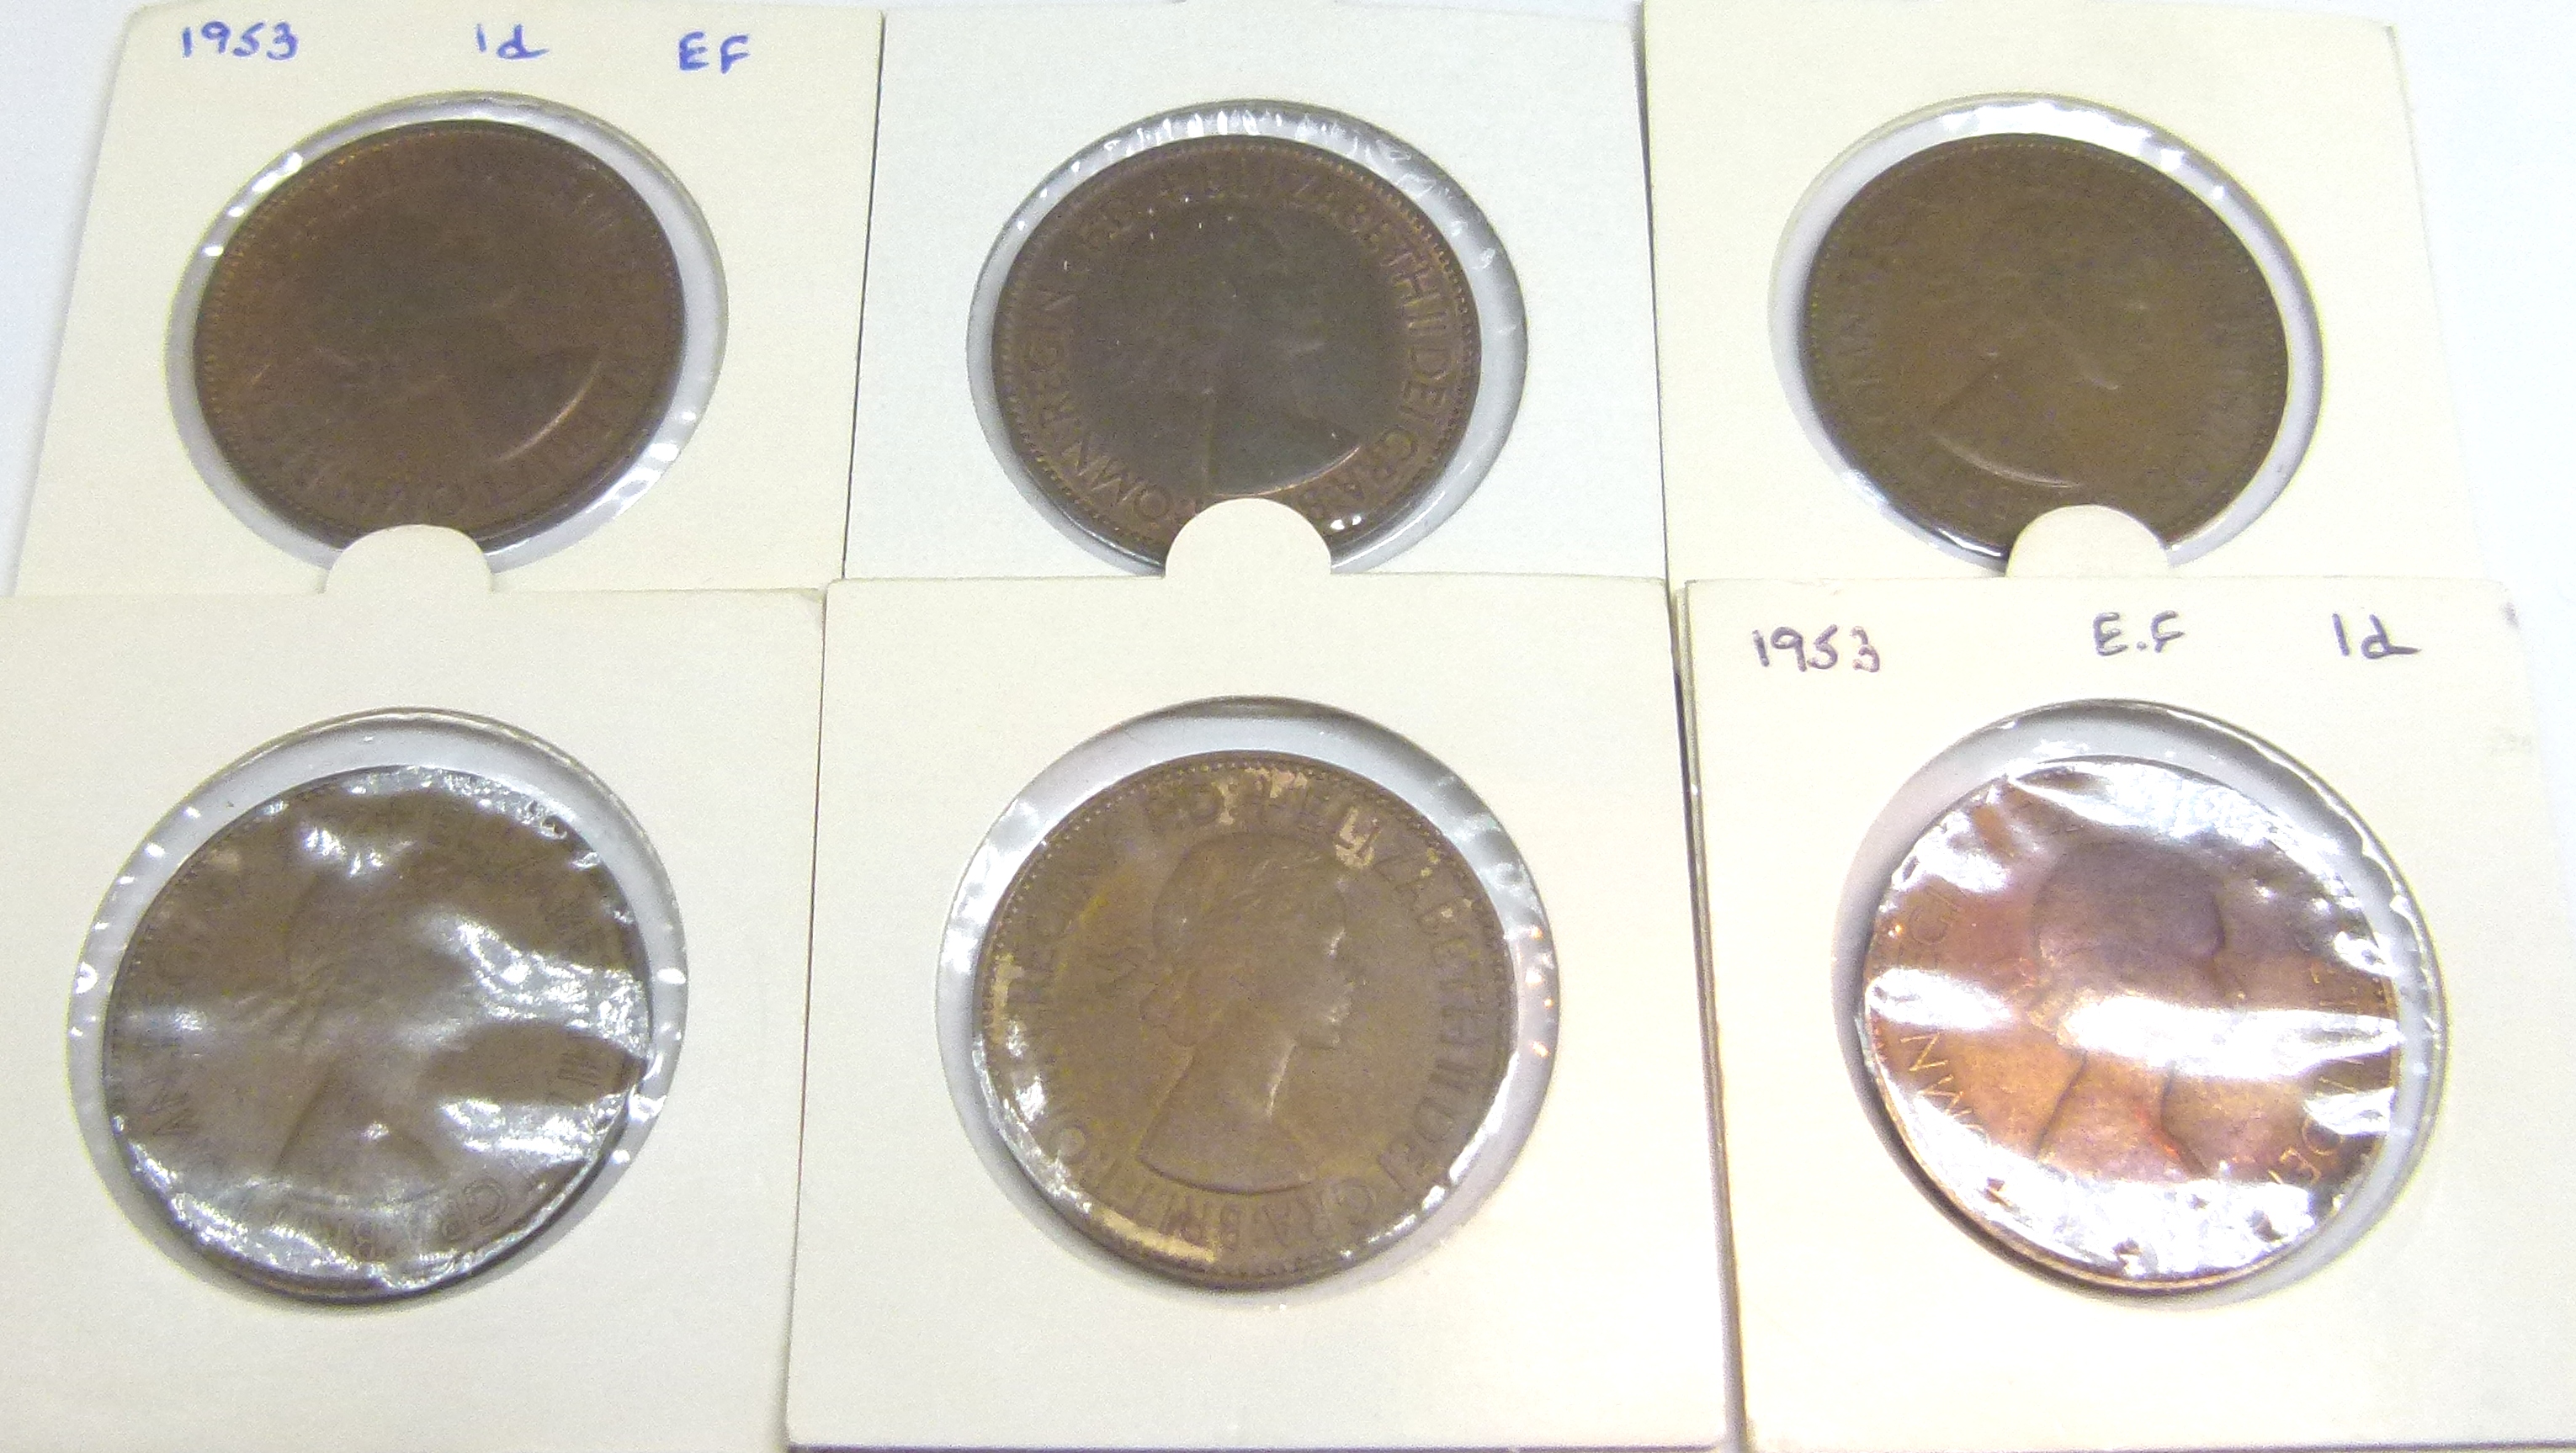 Six pennies including Queen Elizabeth 1953,